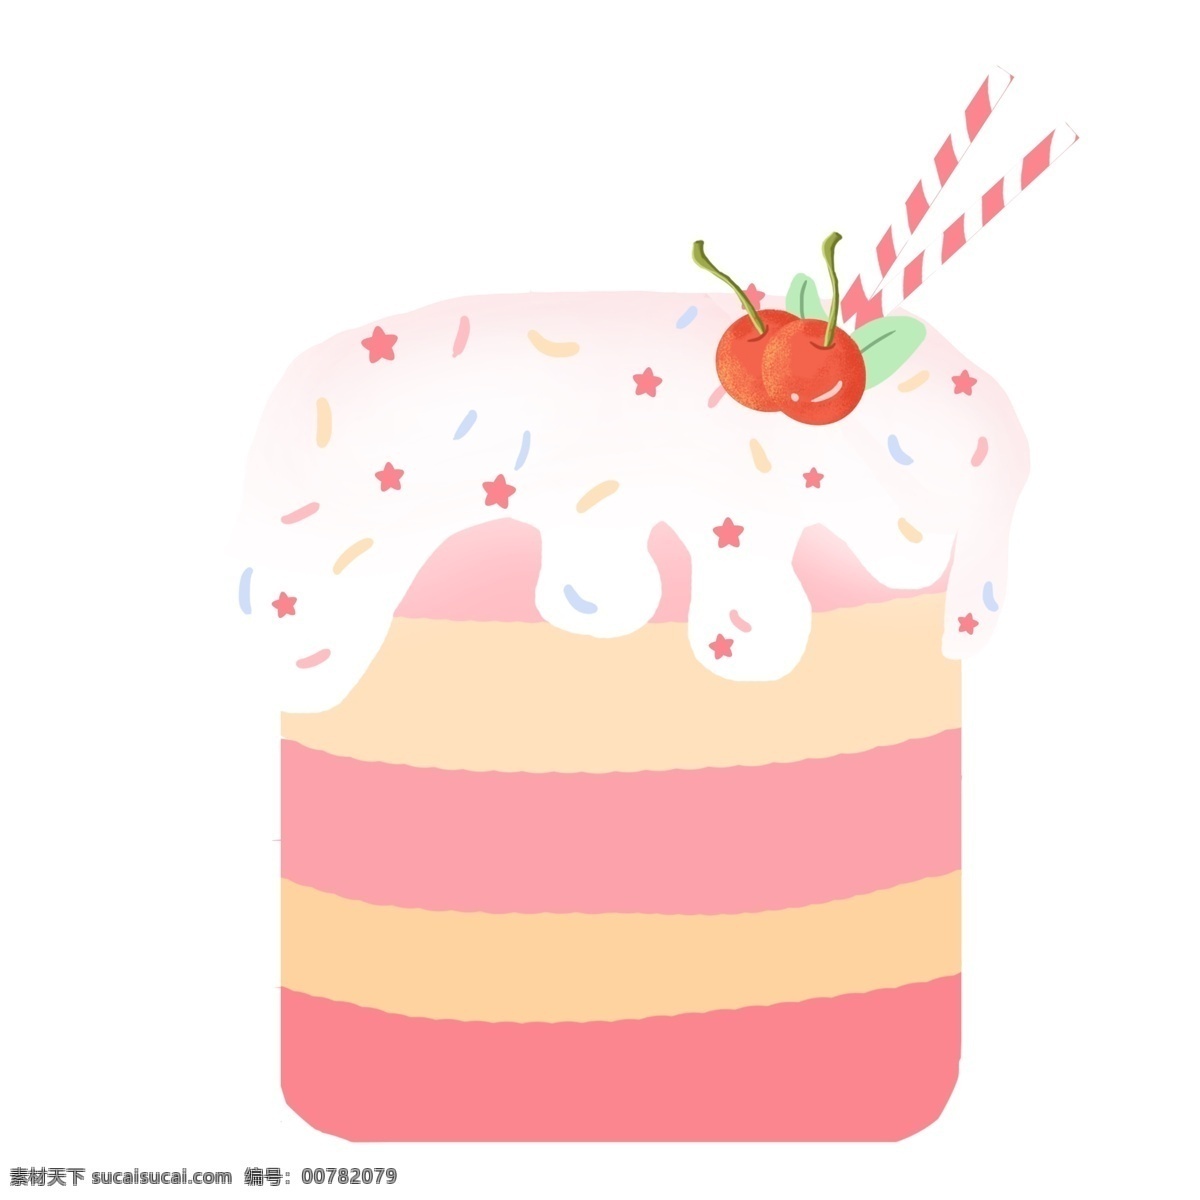 漂亮 水果 蛋糕 插画 樱桃 红色星星 红色蛋糕 草莓蛋糕 美味的蛋糕 漂亮的蛋糕 水果蛋糕插画